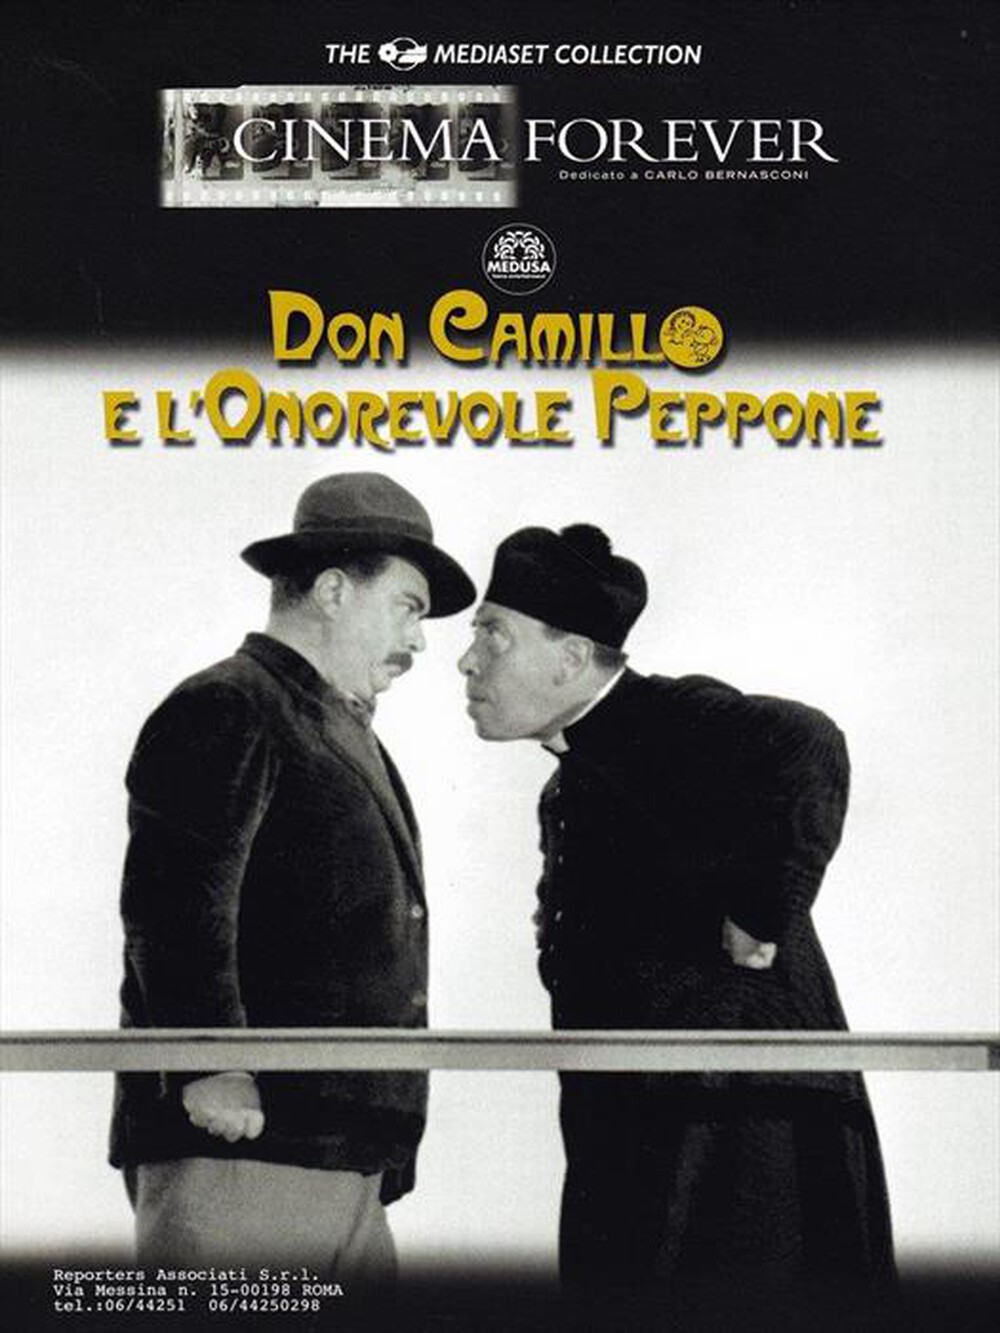 "CECCHI GORI - Don Camillo E L'Onorevole Peppone - "